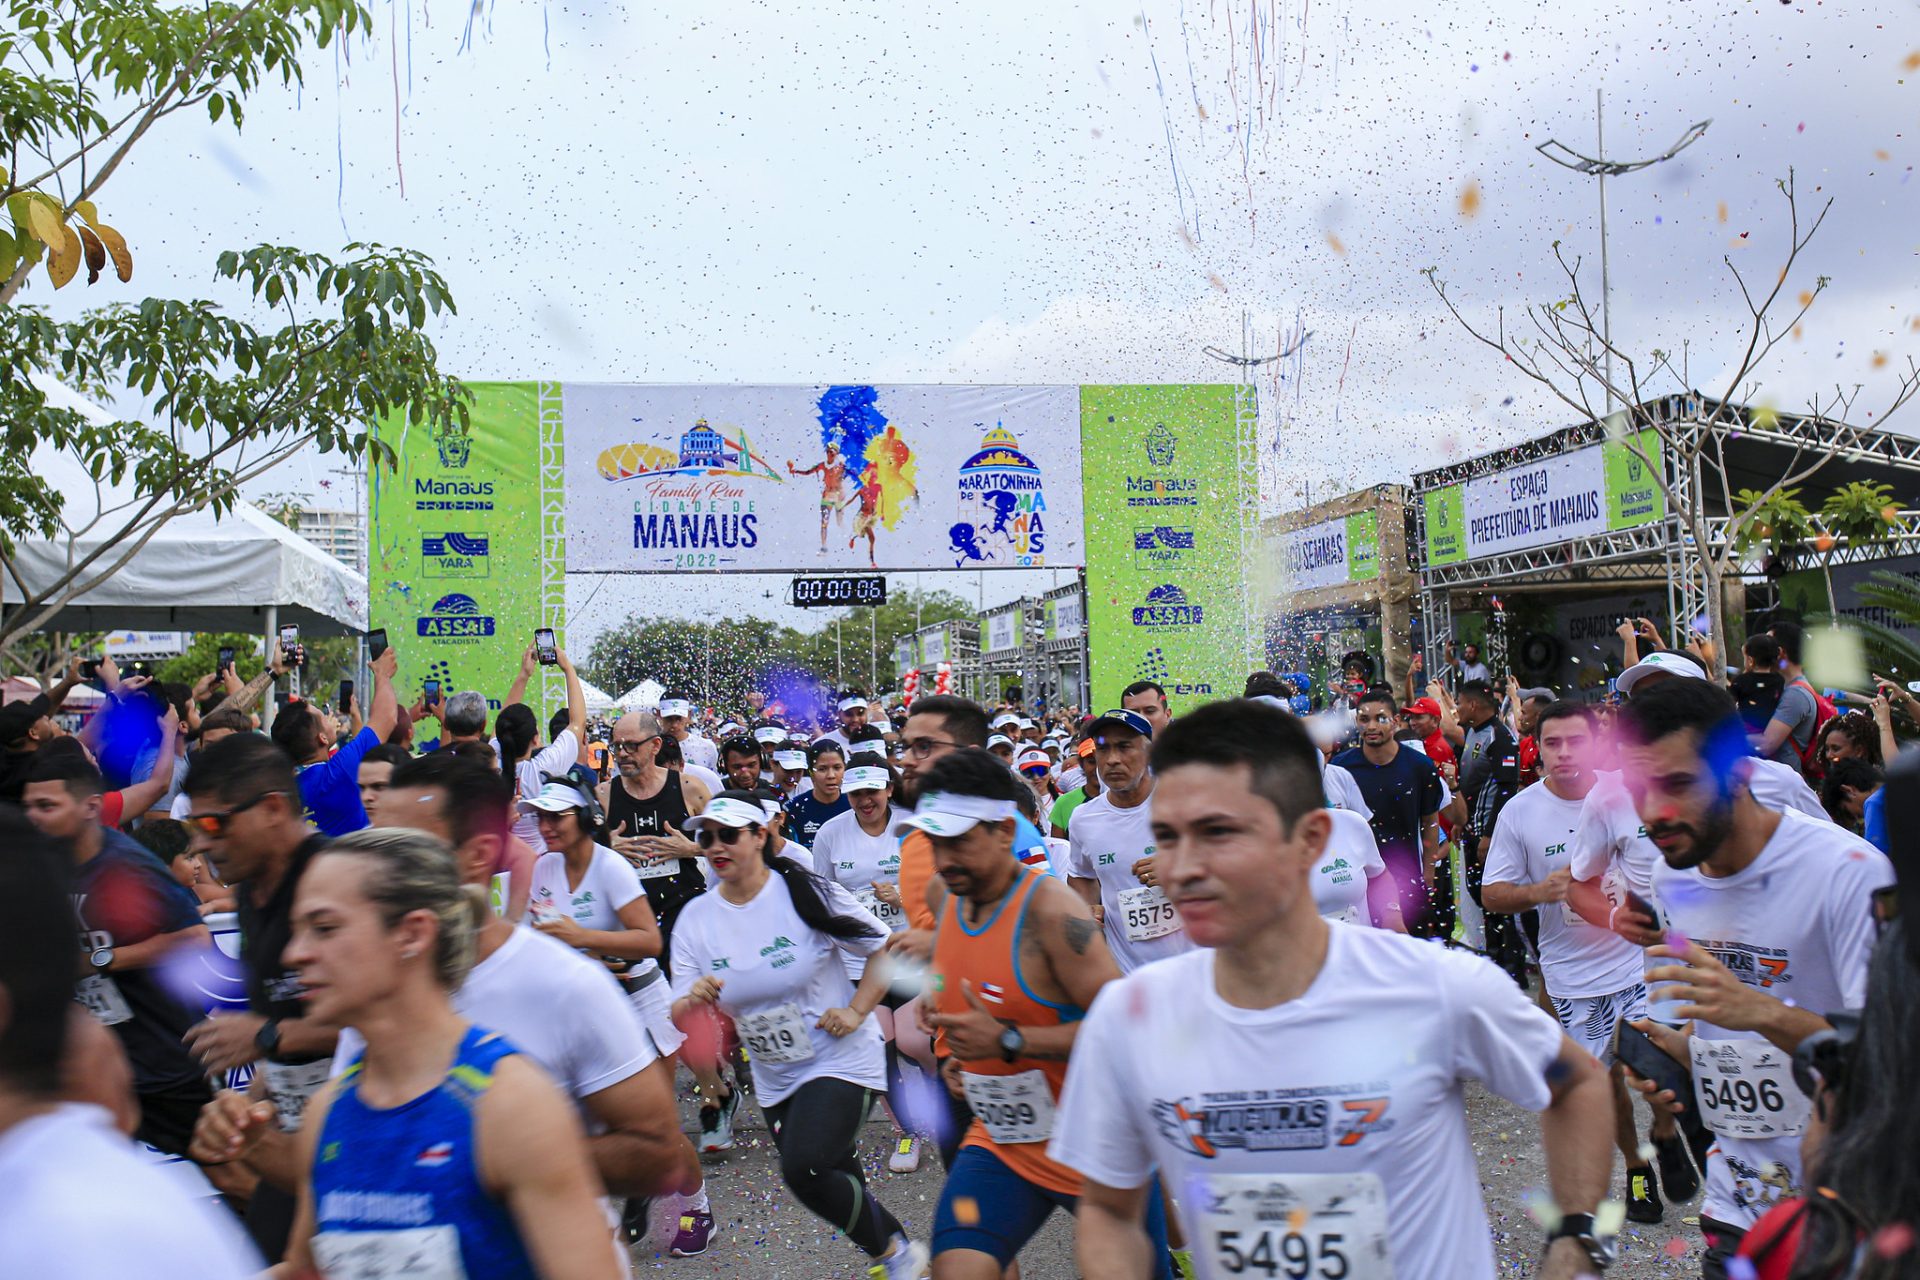 Maratona Internacional de Manaus ocorre no complexo turístico Ponta Negra - Foto: Dhyeizo Lemos/Semcom